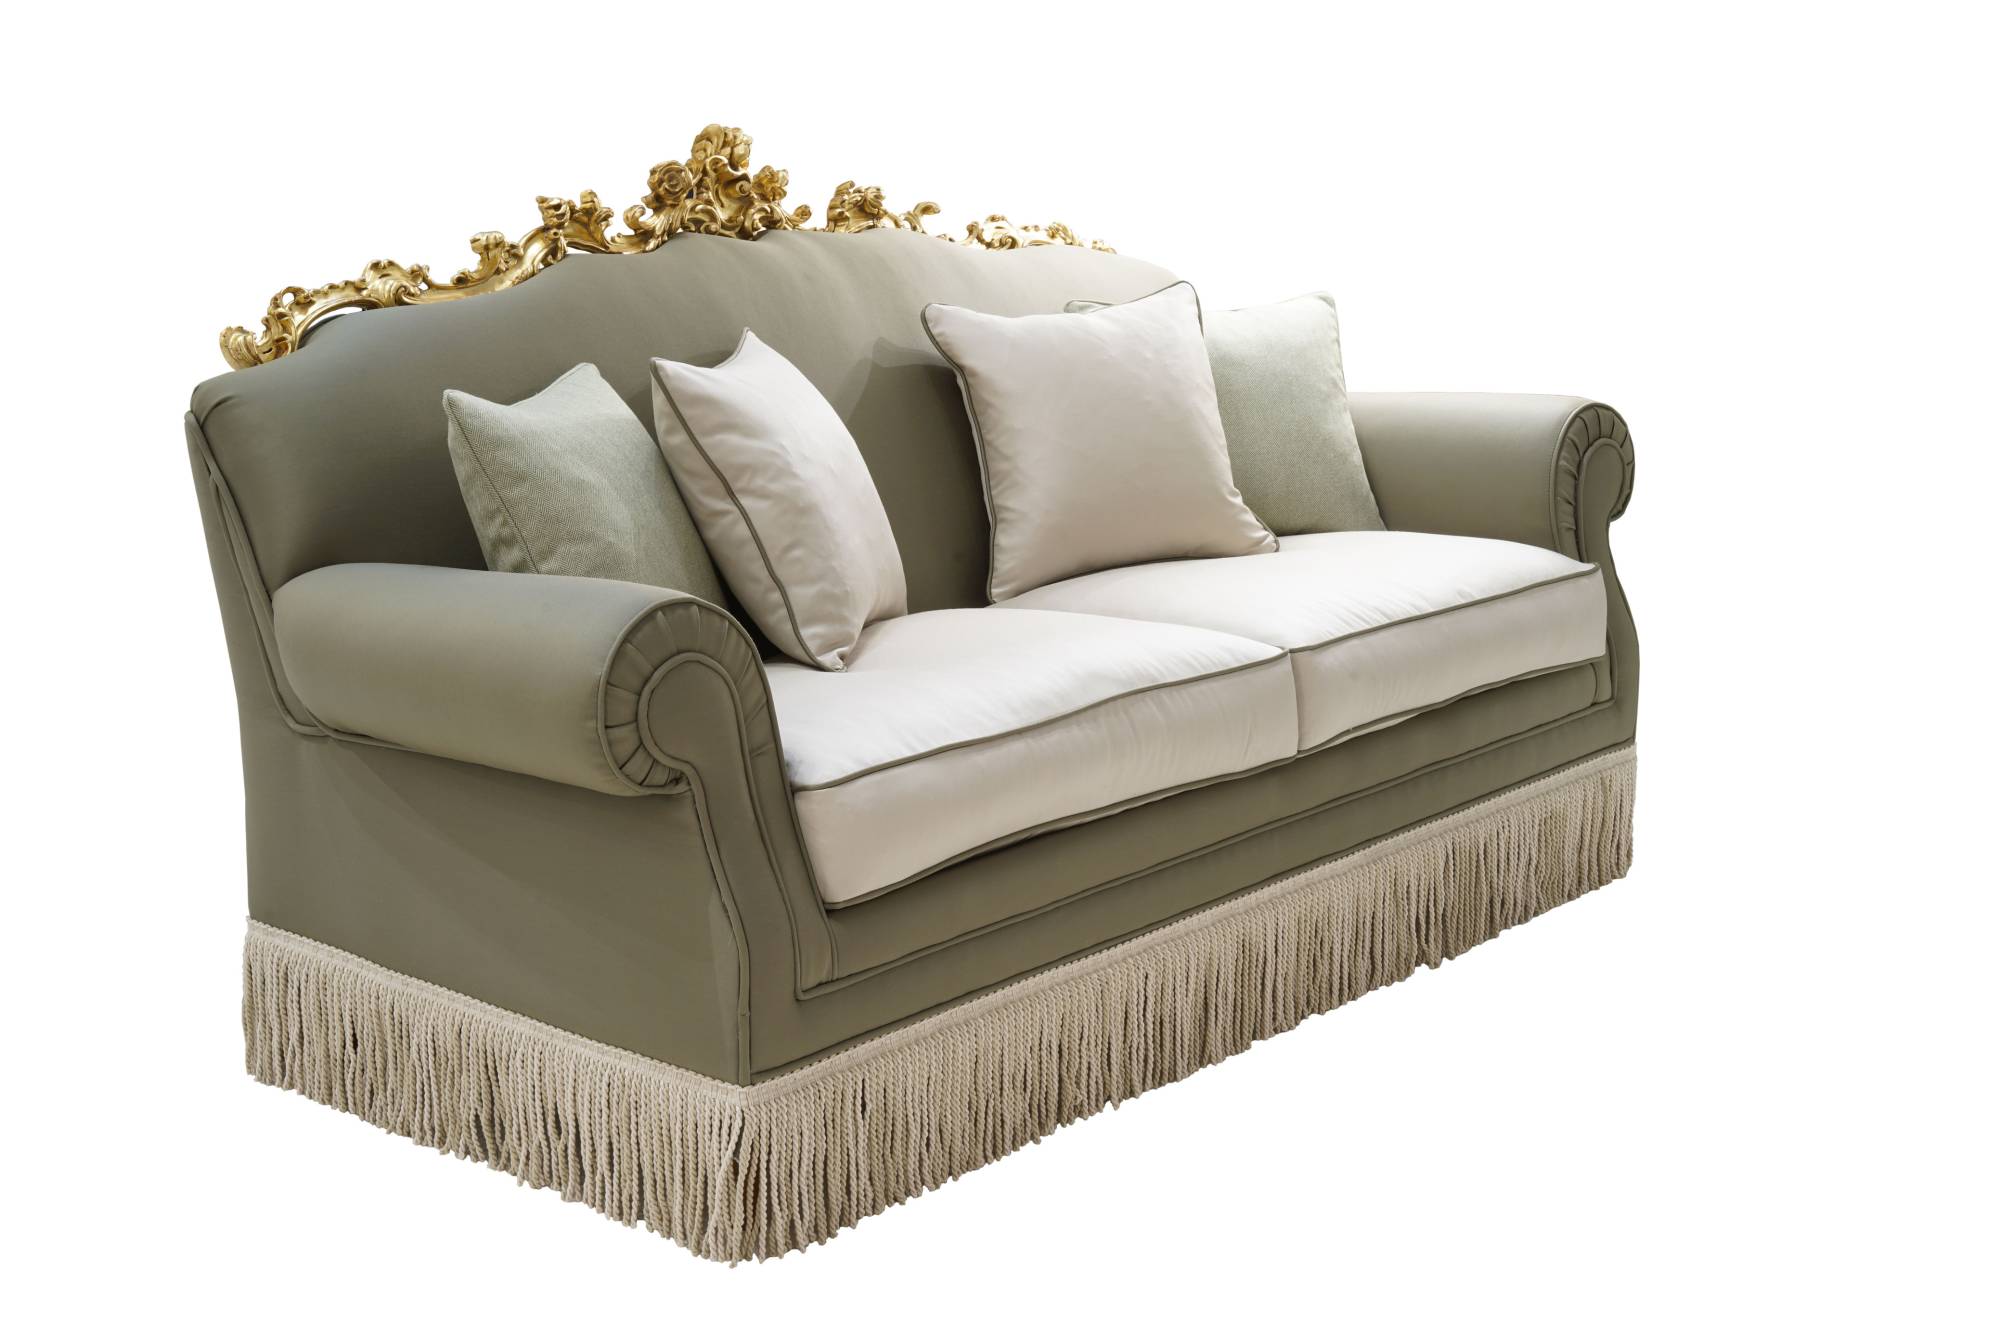 ART. 2201 – C.G. Capelletti Italian Luxury Classic Sofas. Made in Italy classic interior design